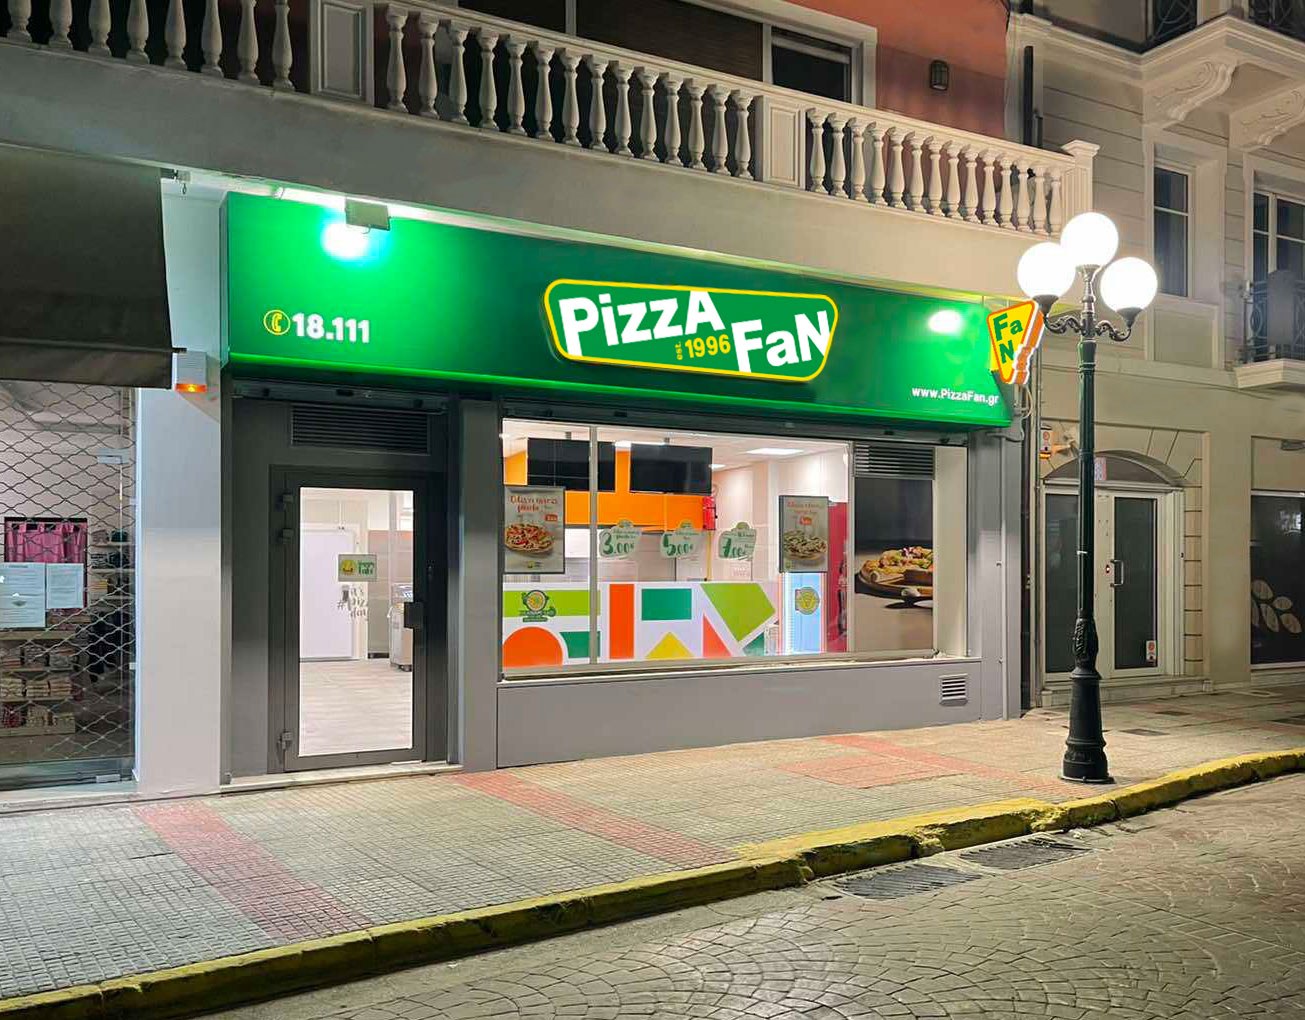 Ένα νέο κατάστημα Pizza Fan άνοιξε στις 12 Απριλίου στον Ασπρόπυργο, στη διεύθυνση Δημητρίου Λιάκου 1, φέρνοντας λαχταριστές γεύσεις.